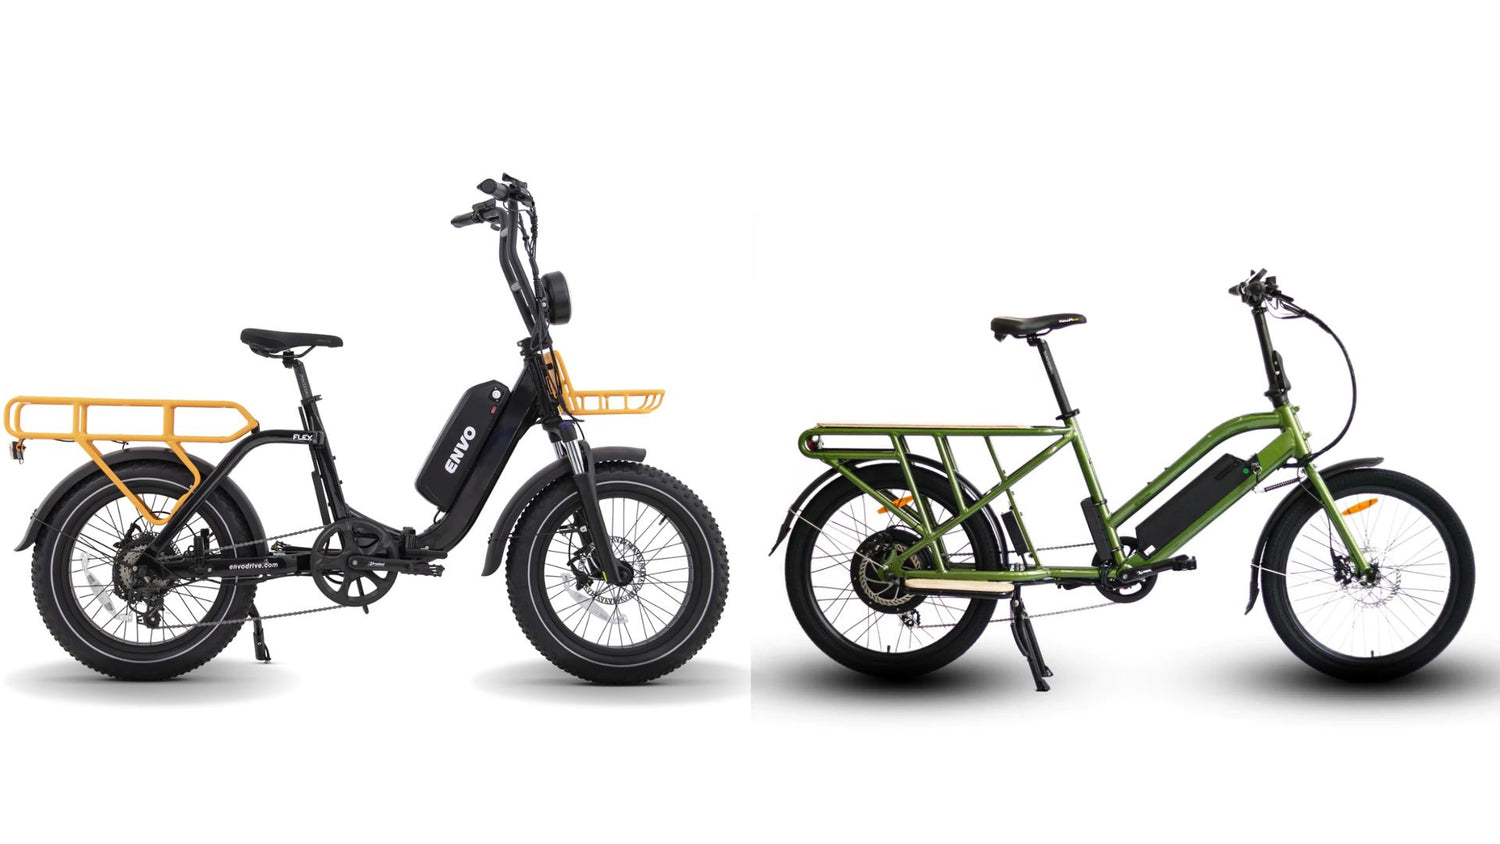 Best Cargo E-Bike: ENVO Flex Overland vs Eunorau Max-Cargo